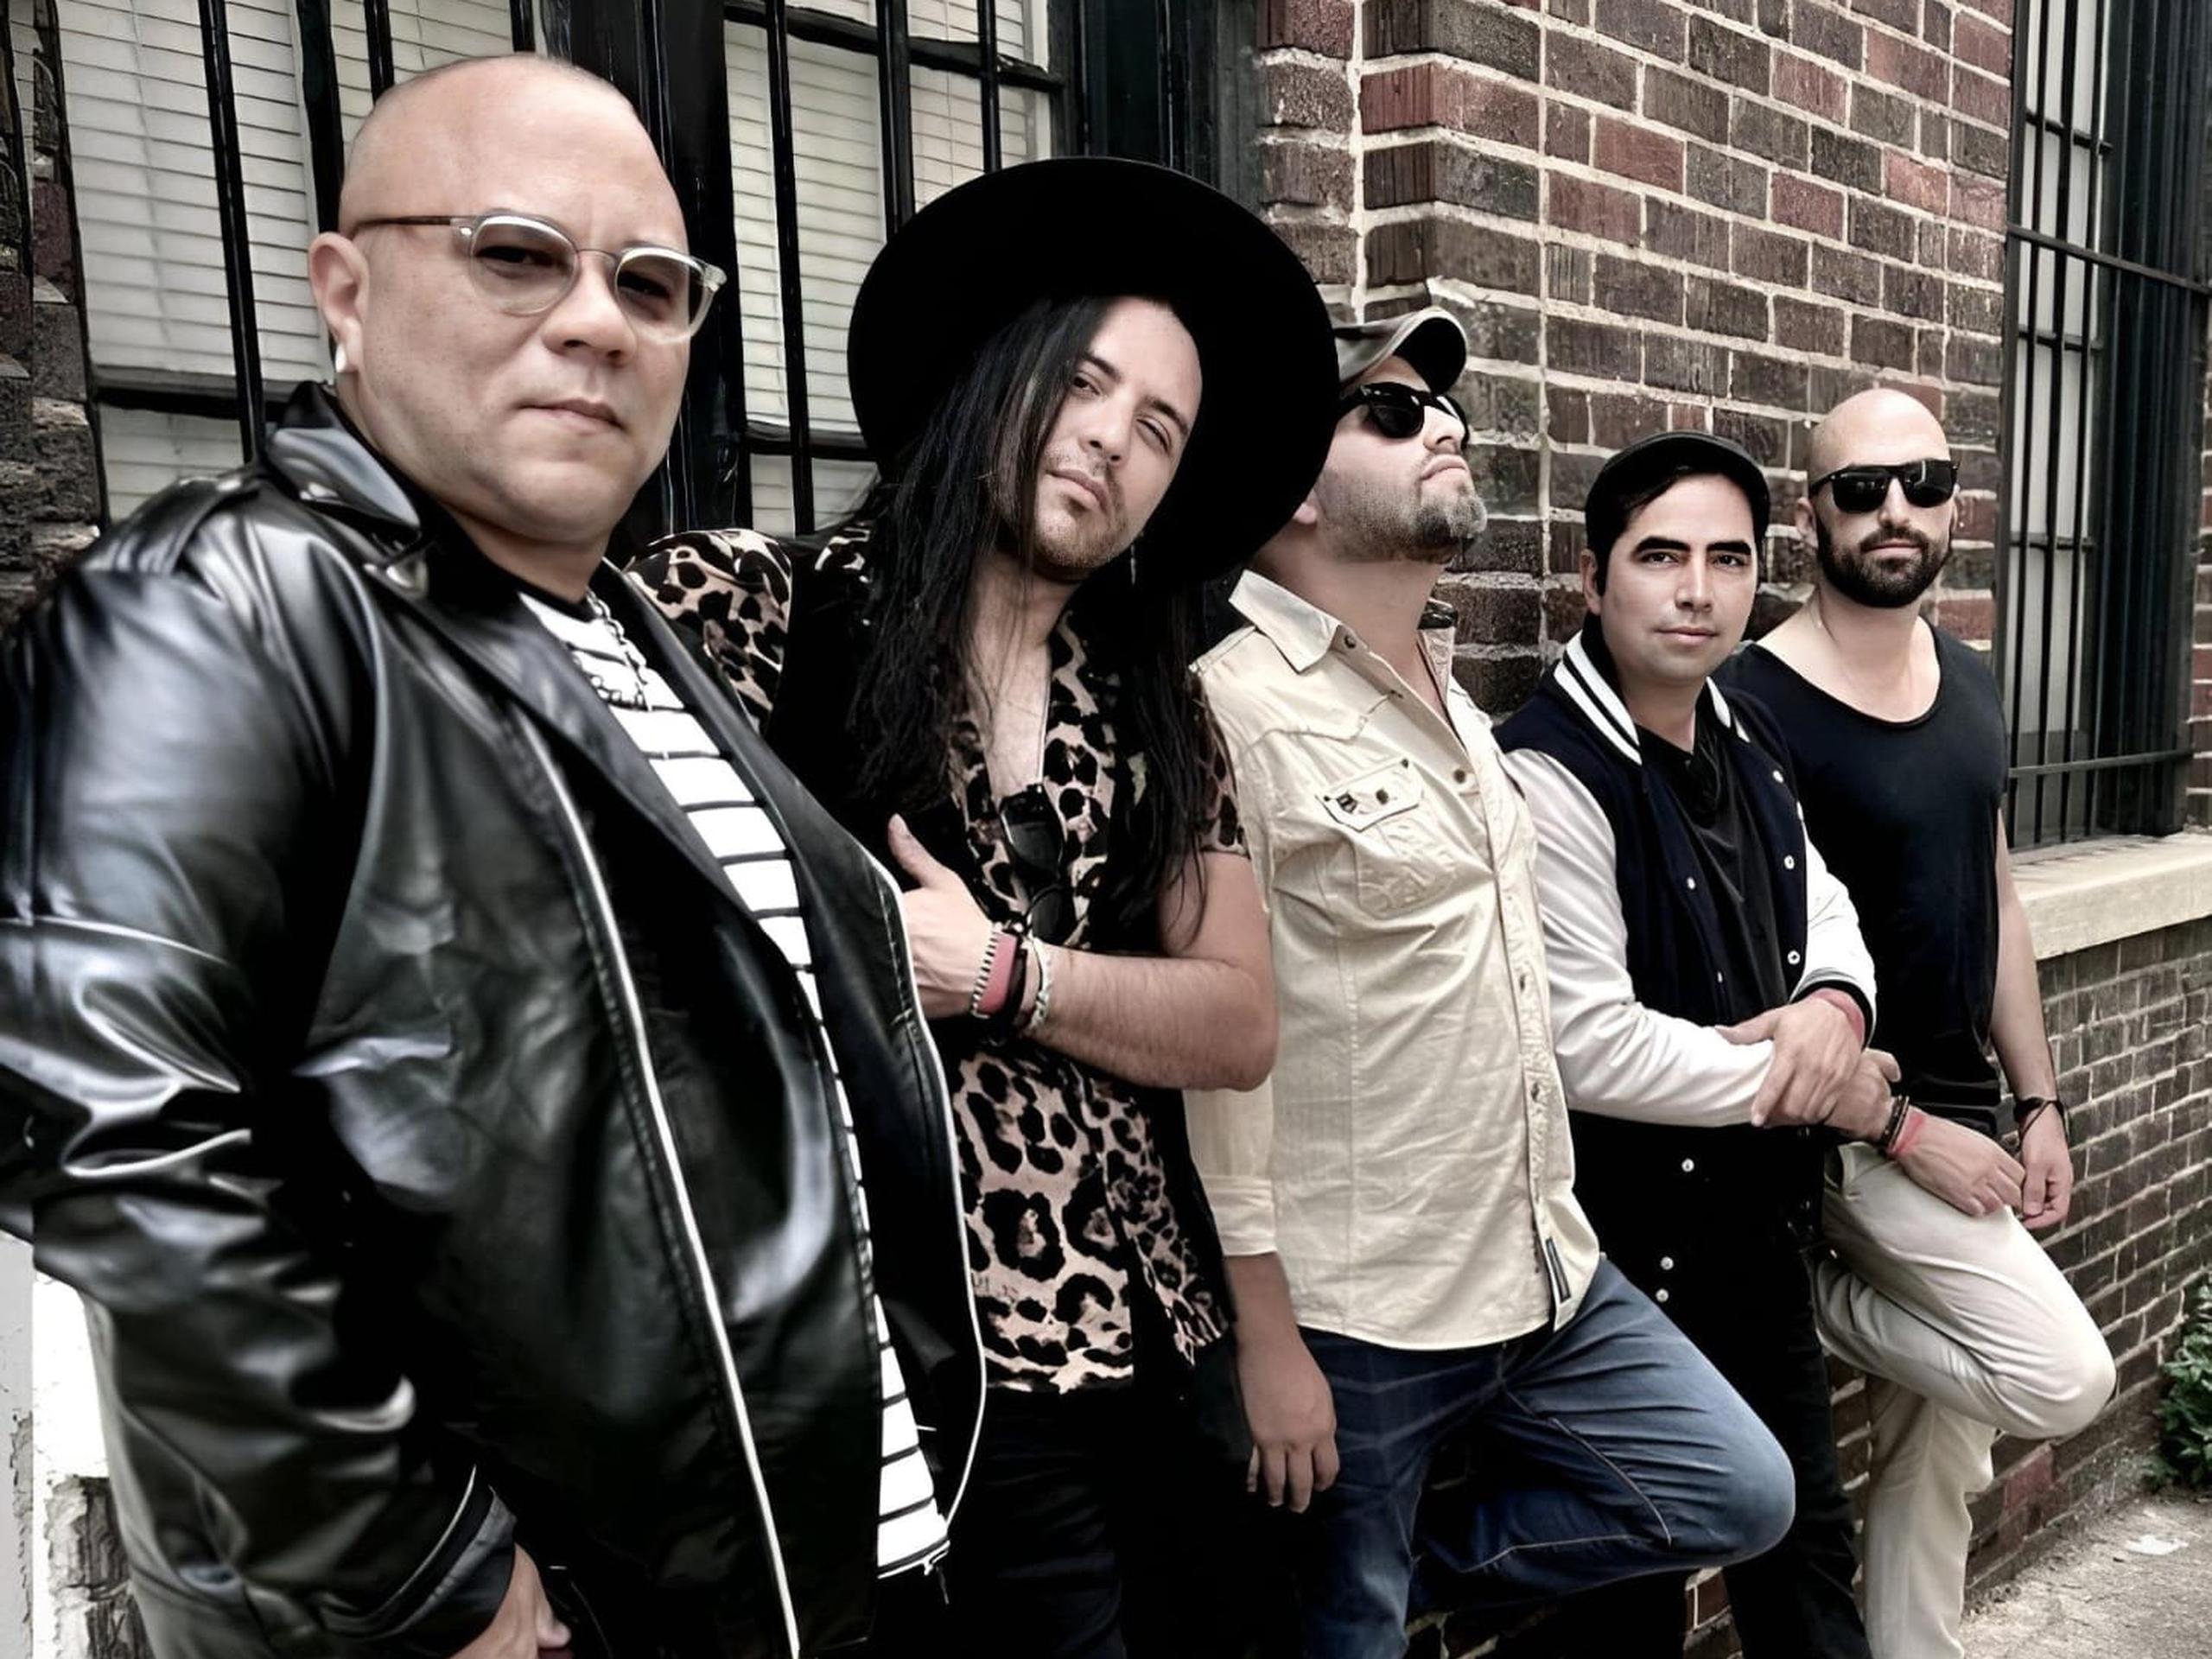 La banda Sonòsfera promete convertir su más reciente lanzamiento en un himno del rock boricua.